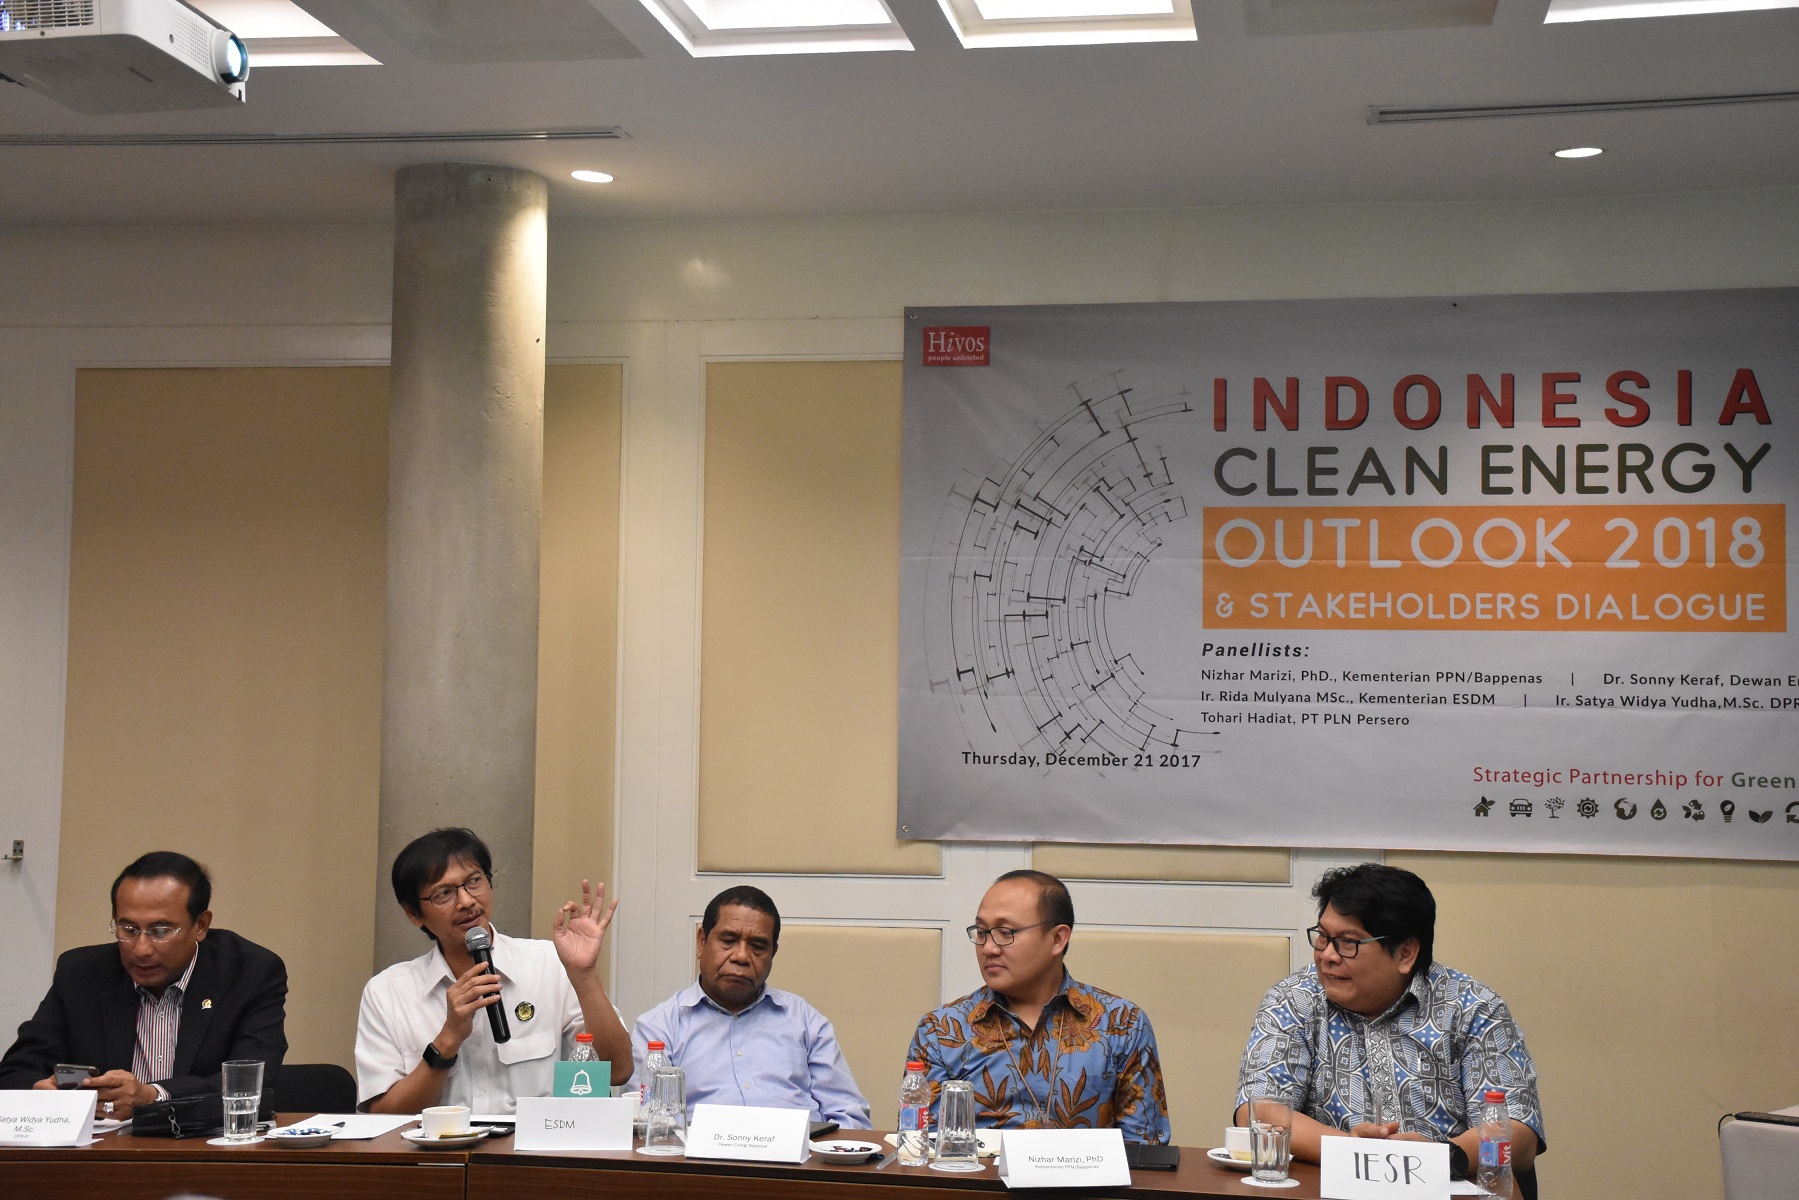 Ditjen EBTKE Rida Mulyana hadir sebagai panelis dalam acara diskusi dan peluncuran Indonesia Energy Outlook 2018